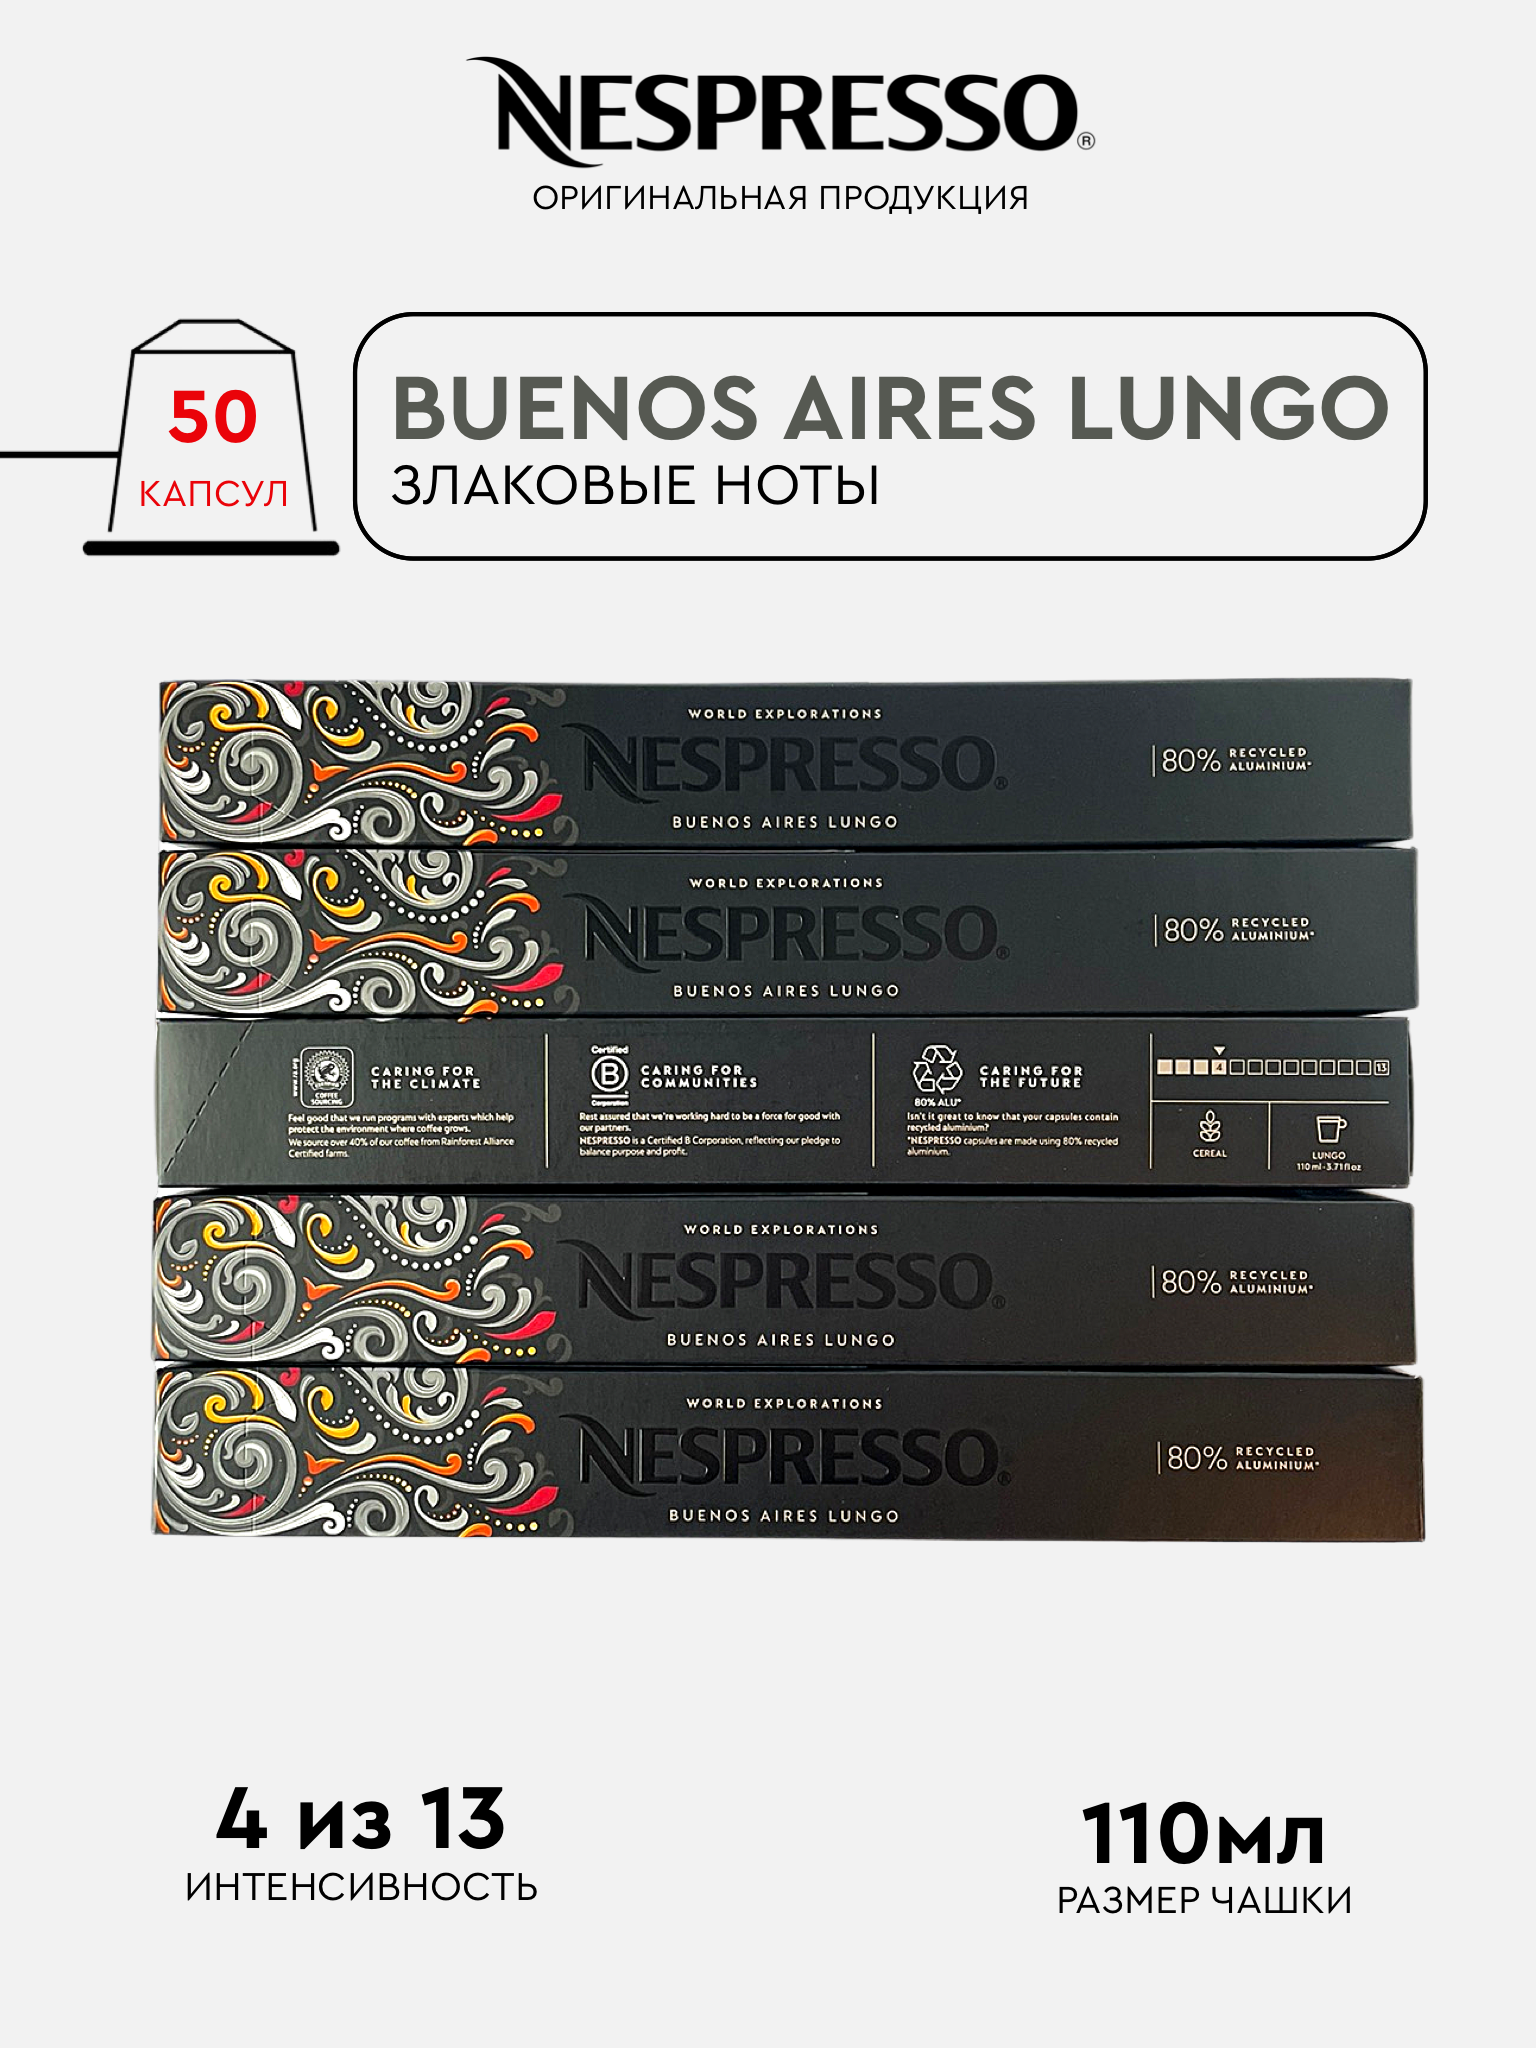 Капсулы Nespresso Buenos Aires Lungo для кофемашины Nespresso Original, 50 капсул